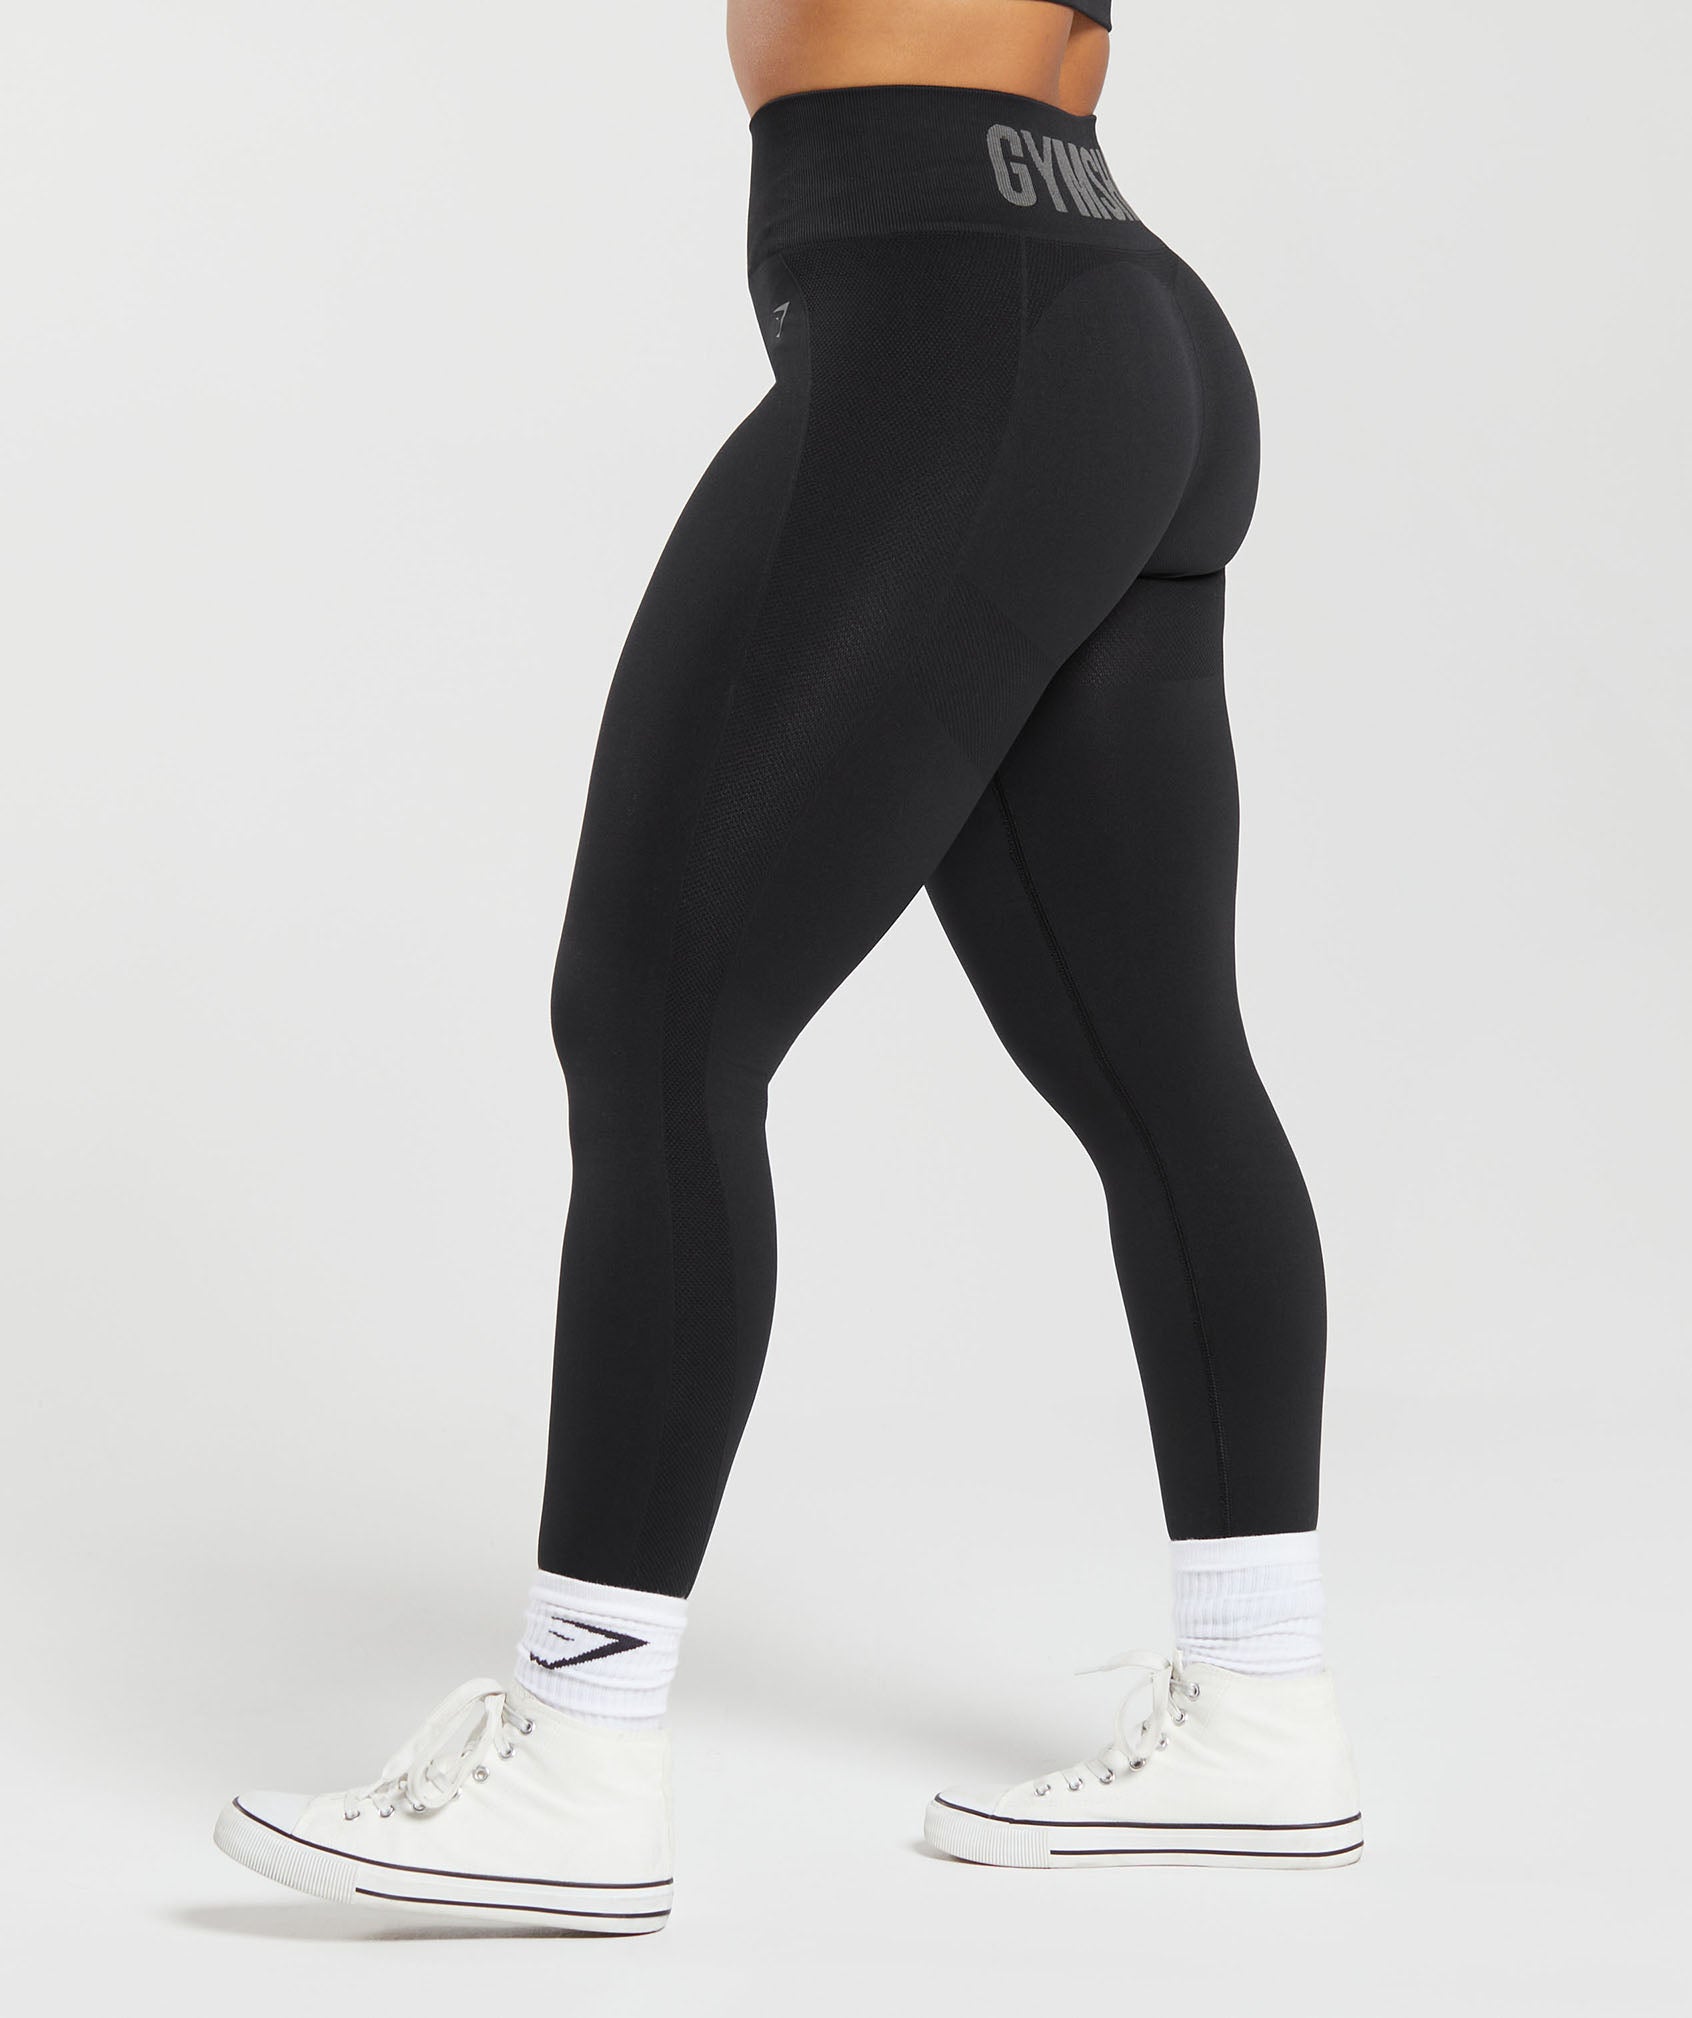 Gymshark Women's Size Medium High Waisted Seamless Logo Waistband Legging